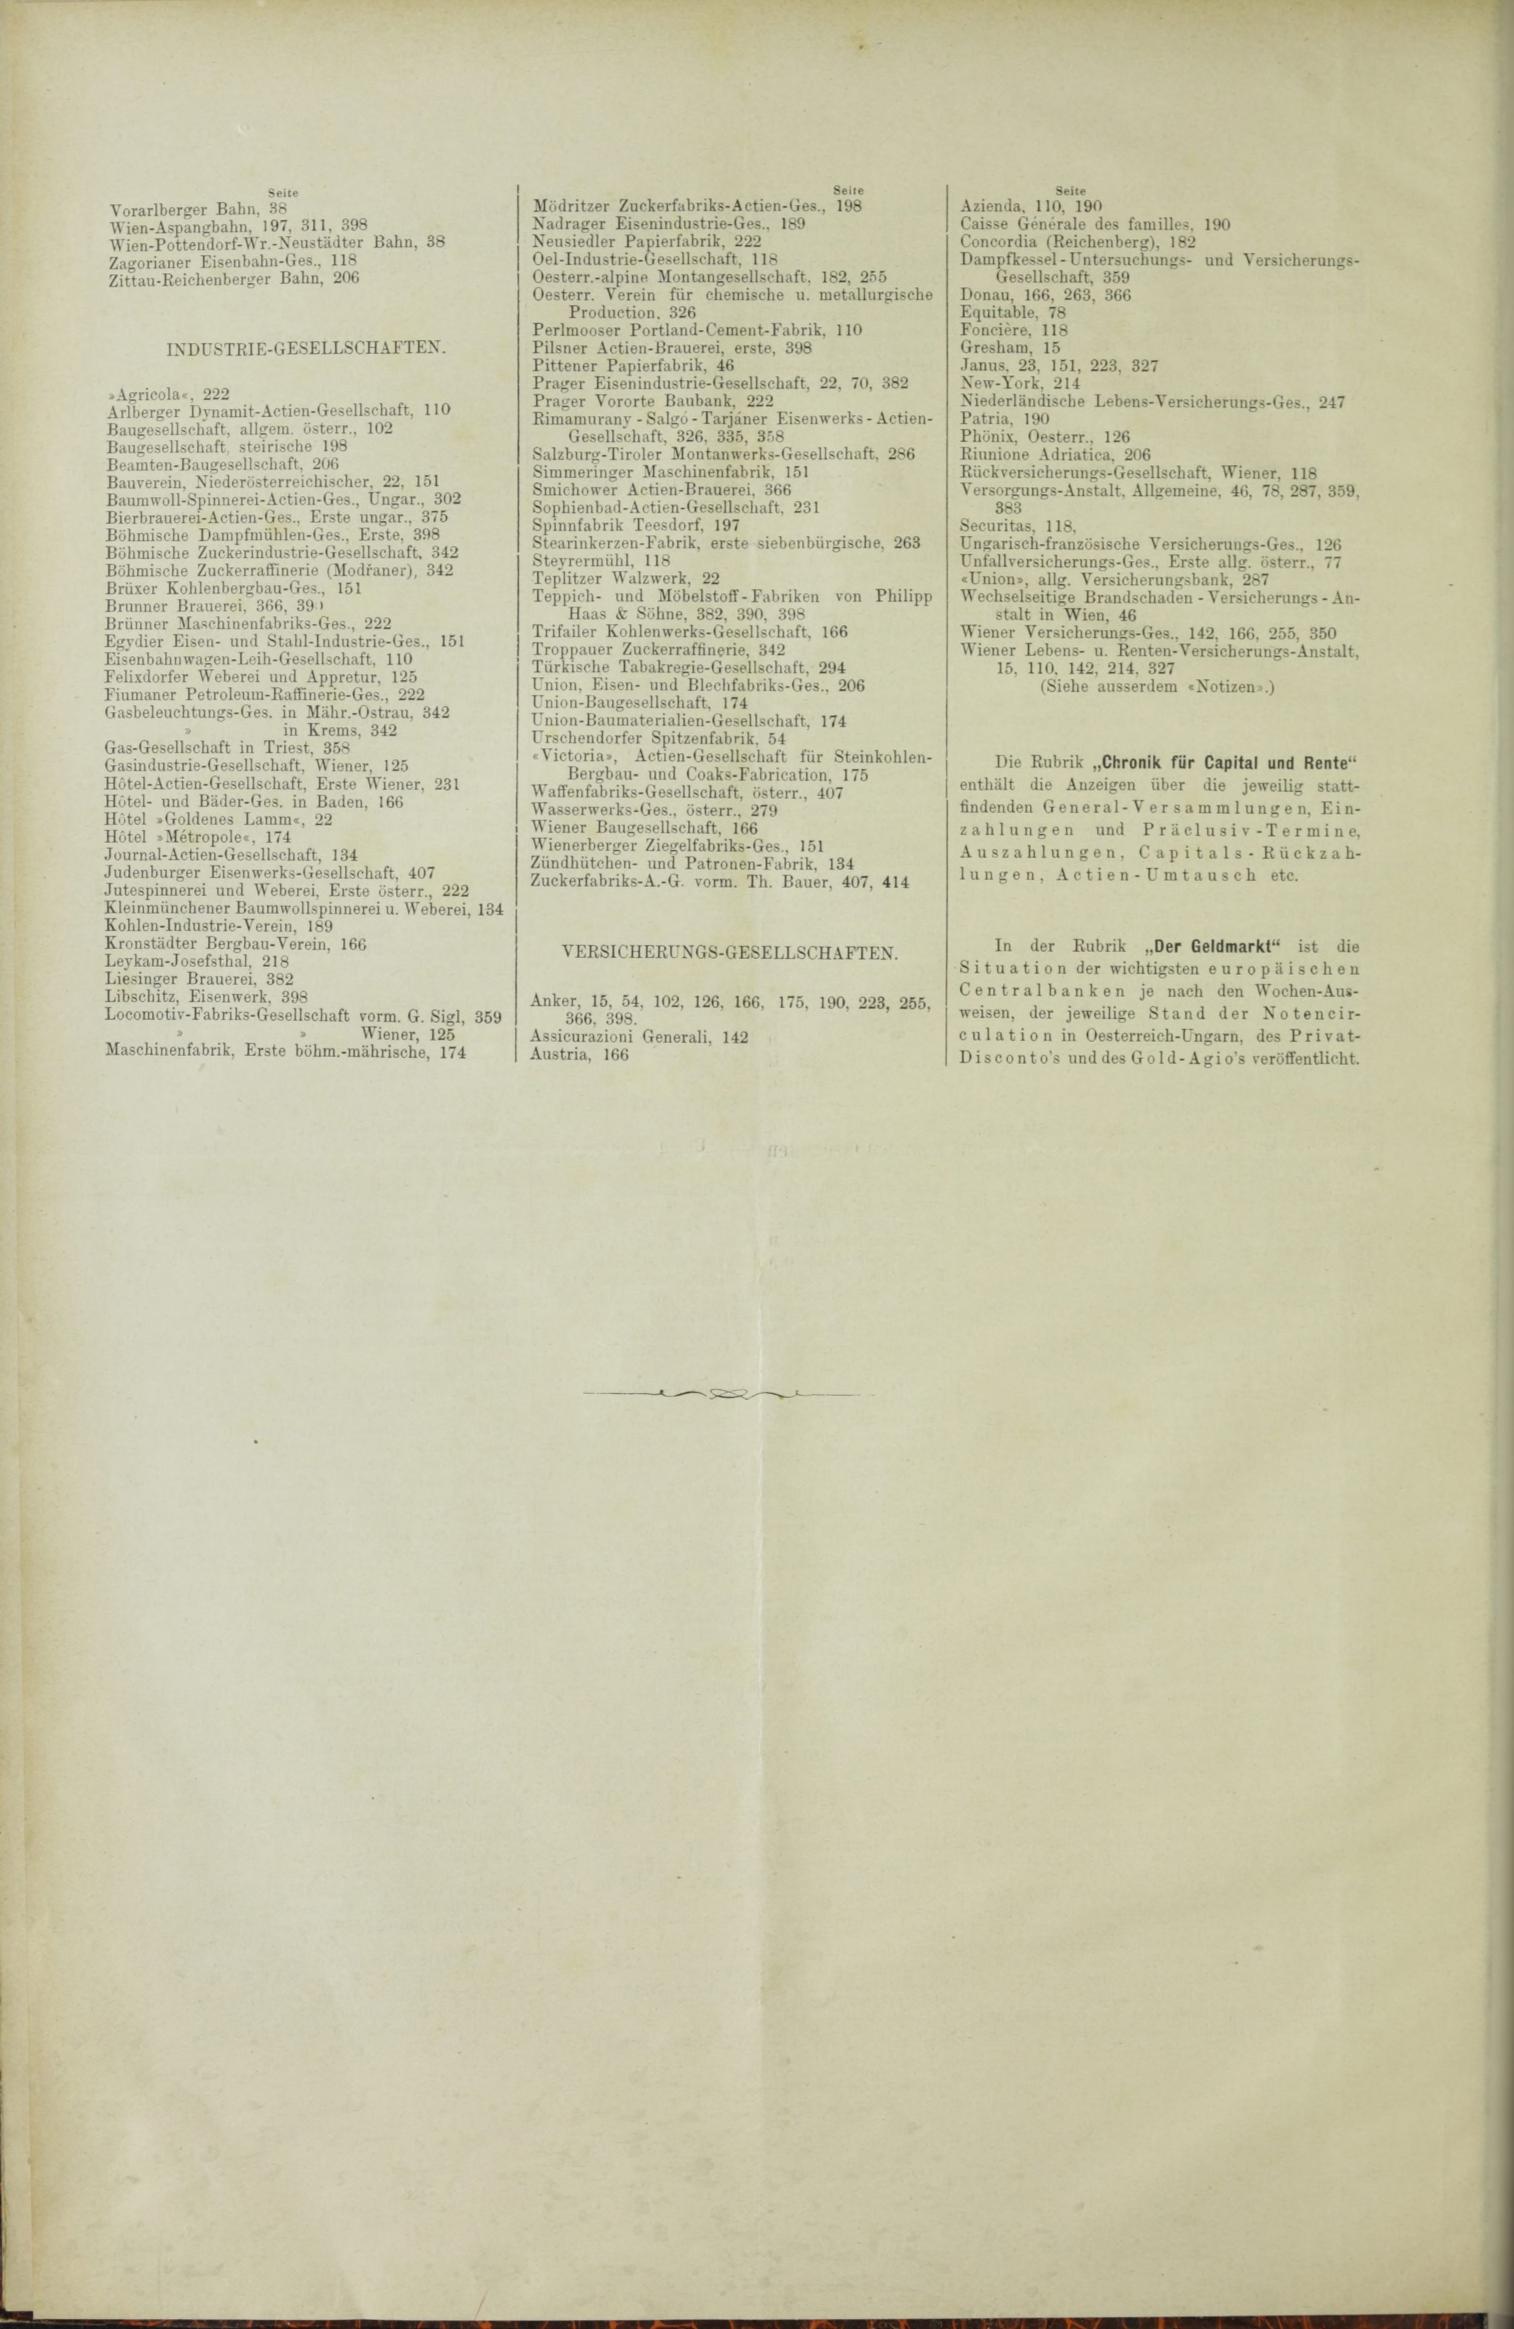 Der Tresor 25.11.1886 - Seite 12